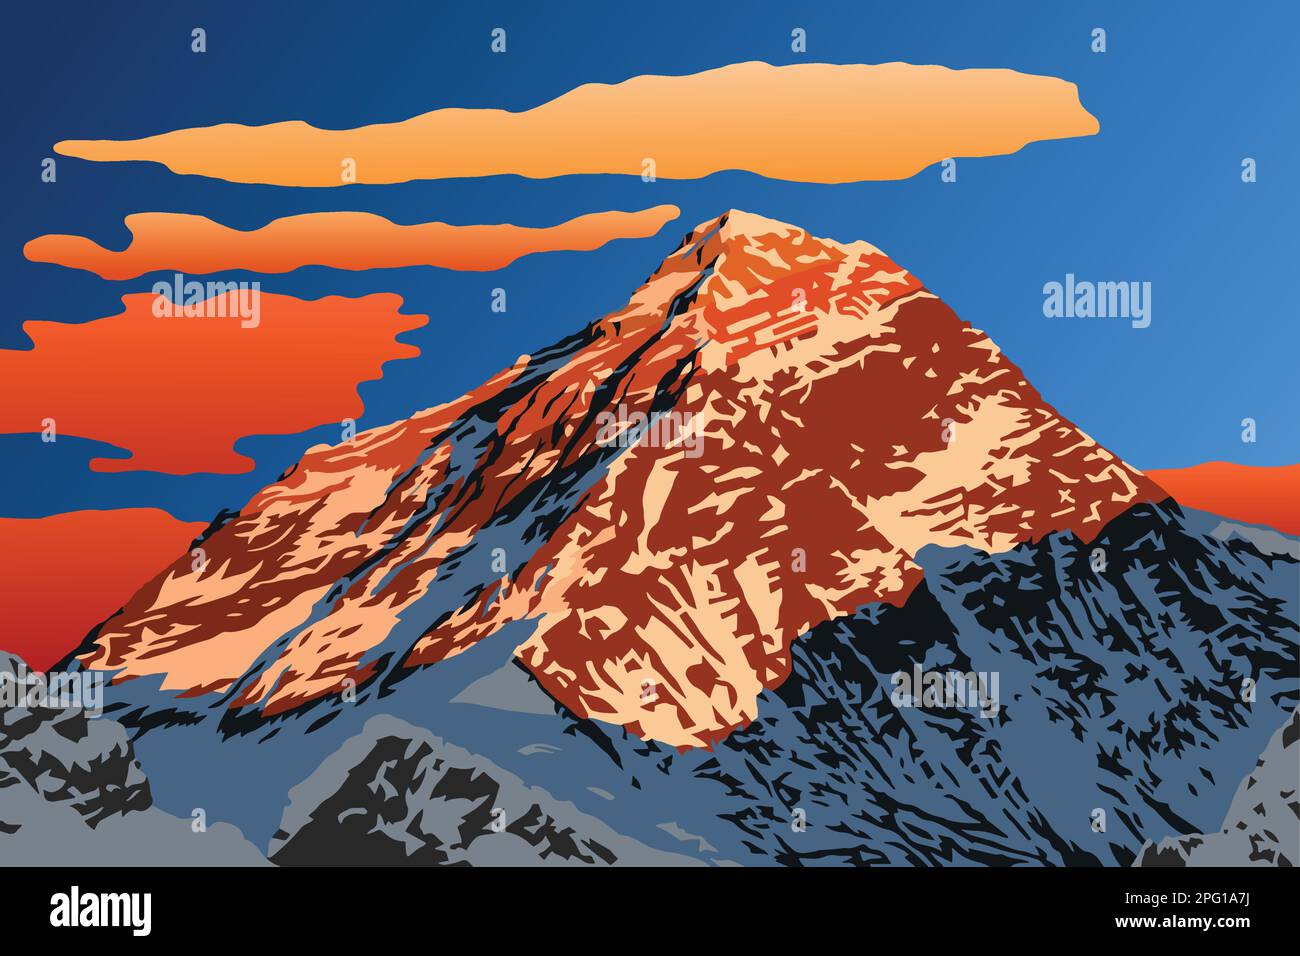 Montagna serale del logo dell'illustrazione vettoriale del monte Everest, montagne del Nepal Himalaya, monte Everest visto dalla cima di Gokyo Ri Illustrazione Vettoriale